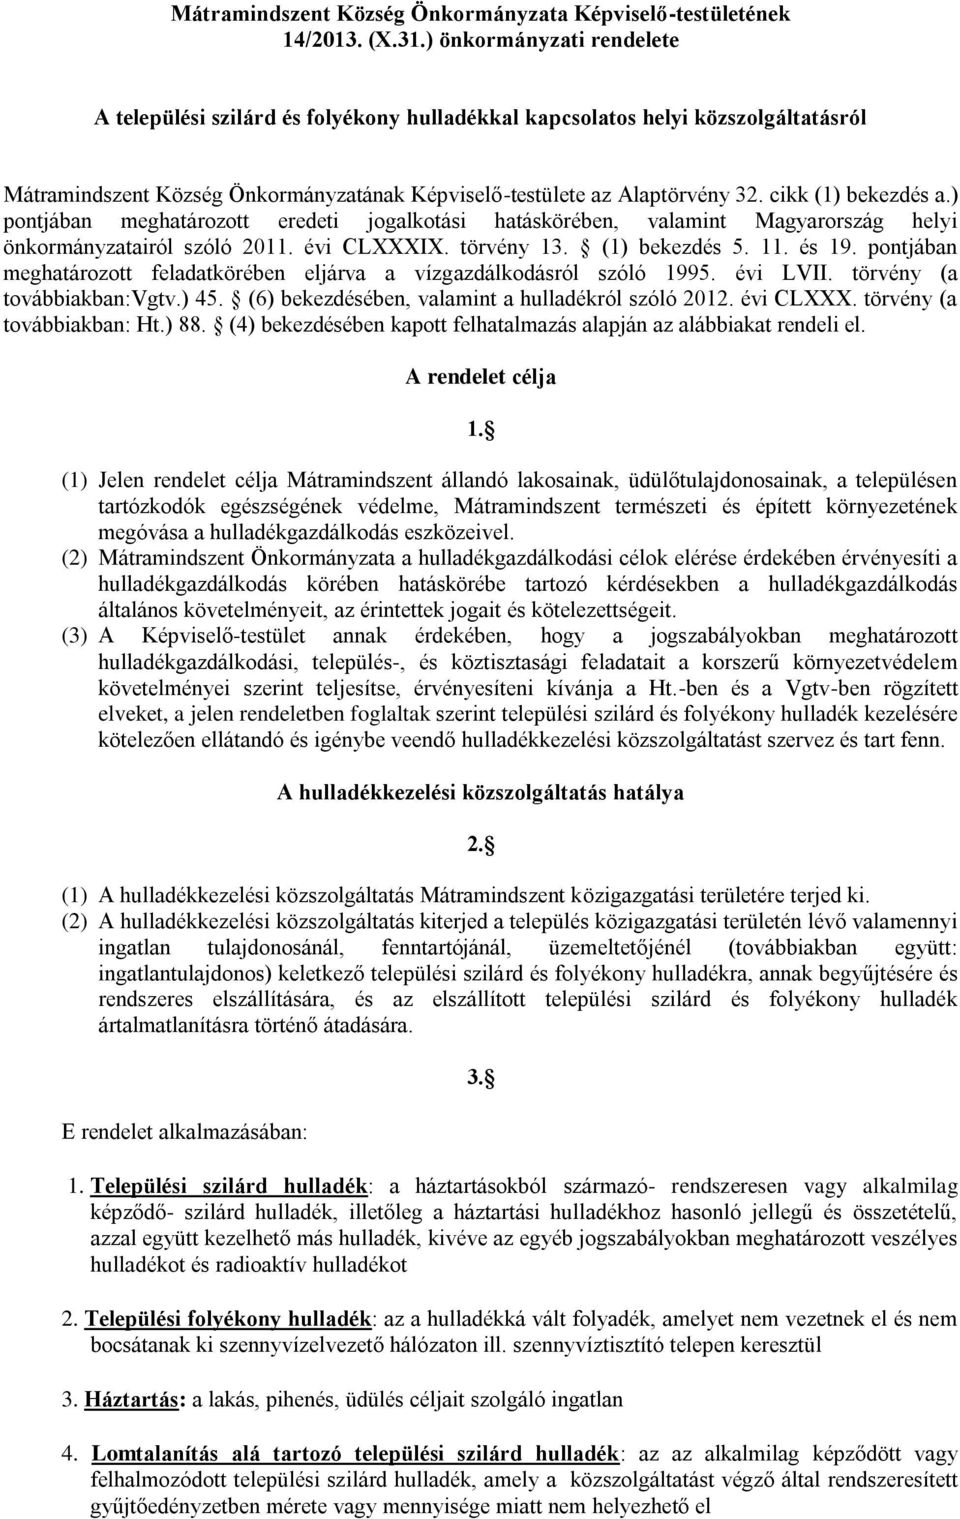 cikk (1) bekezdés a.) pontjában meghatározott eredeti jogalkotási hatáskörében, valamint Magyarország helyi önkormányzatairól szóló 2011. évi CLXXXIX. törvény 13. (1) bekezdés 5. 11. és 19.